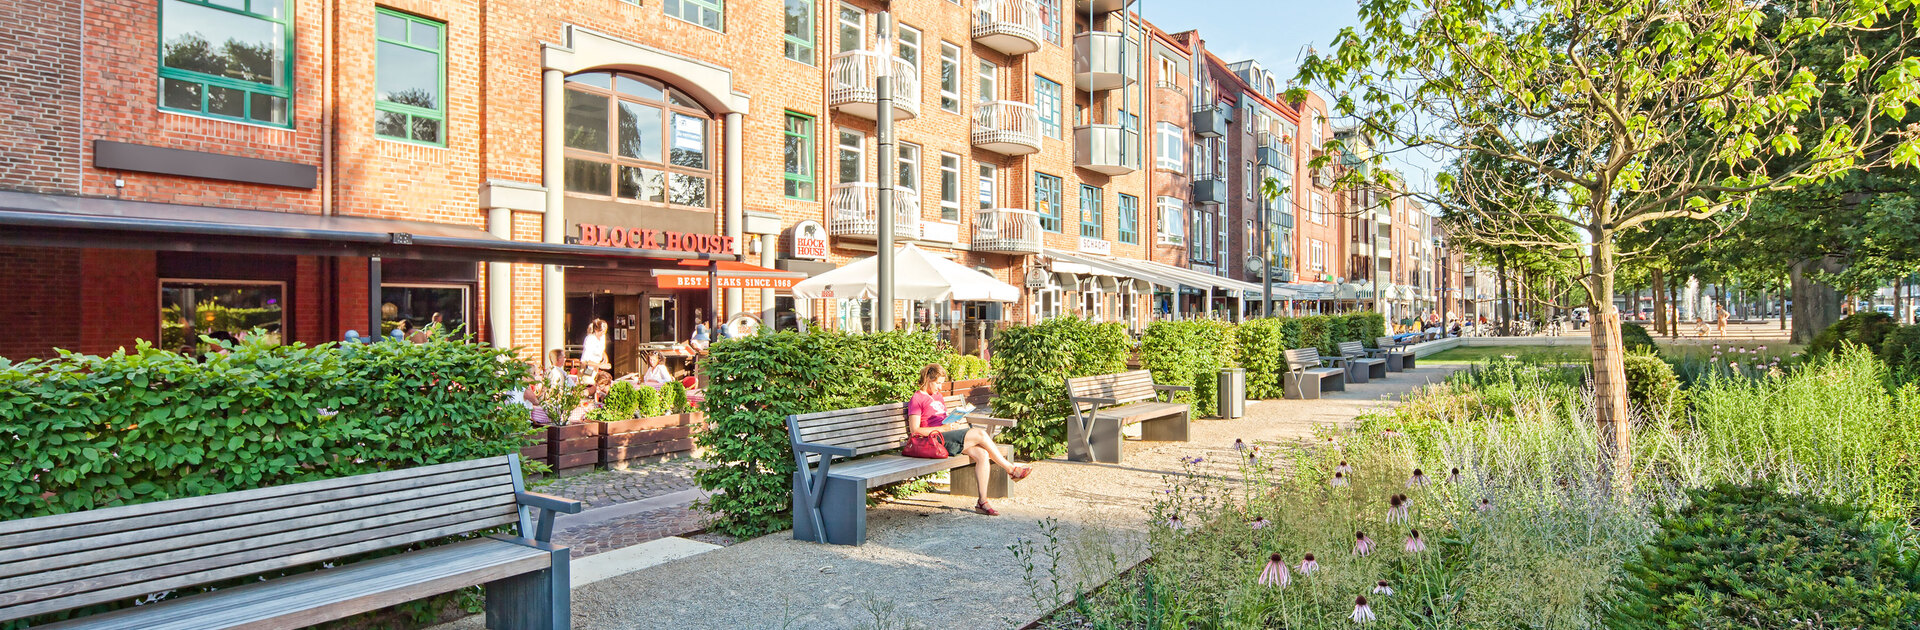 Blick von einem grün gesäumten Fußweg auf das BLOCK HOUSE Restaurant in Ahrensburg. Im Vordergrund stehen mehrere Bänke, auf einer sitzt eine Frau. Vor dem Restaurant ist eine Terrasse, auf der mehrere Gäste sitzen. 